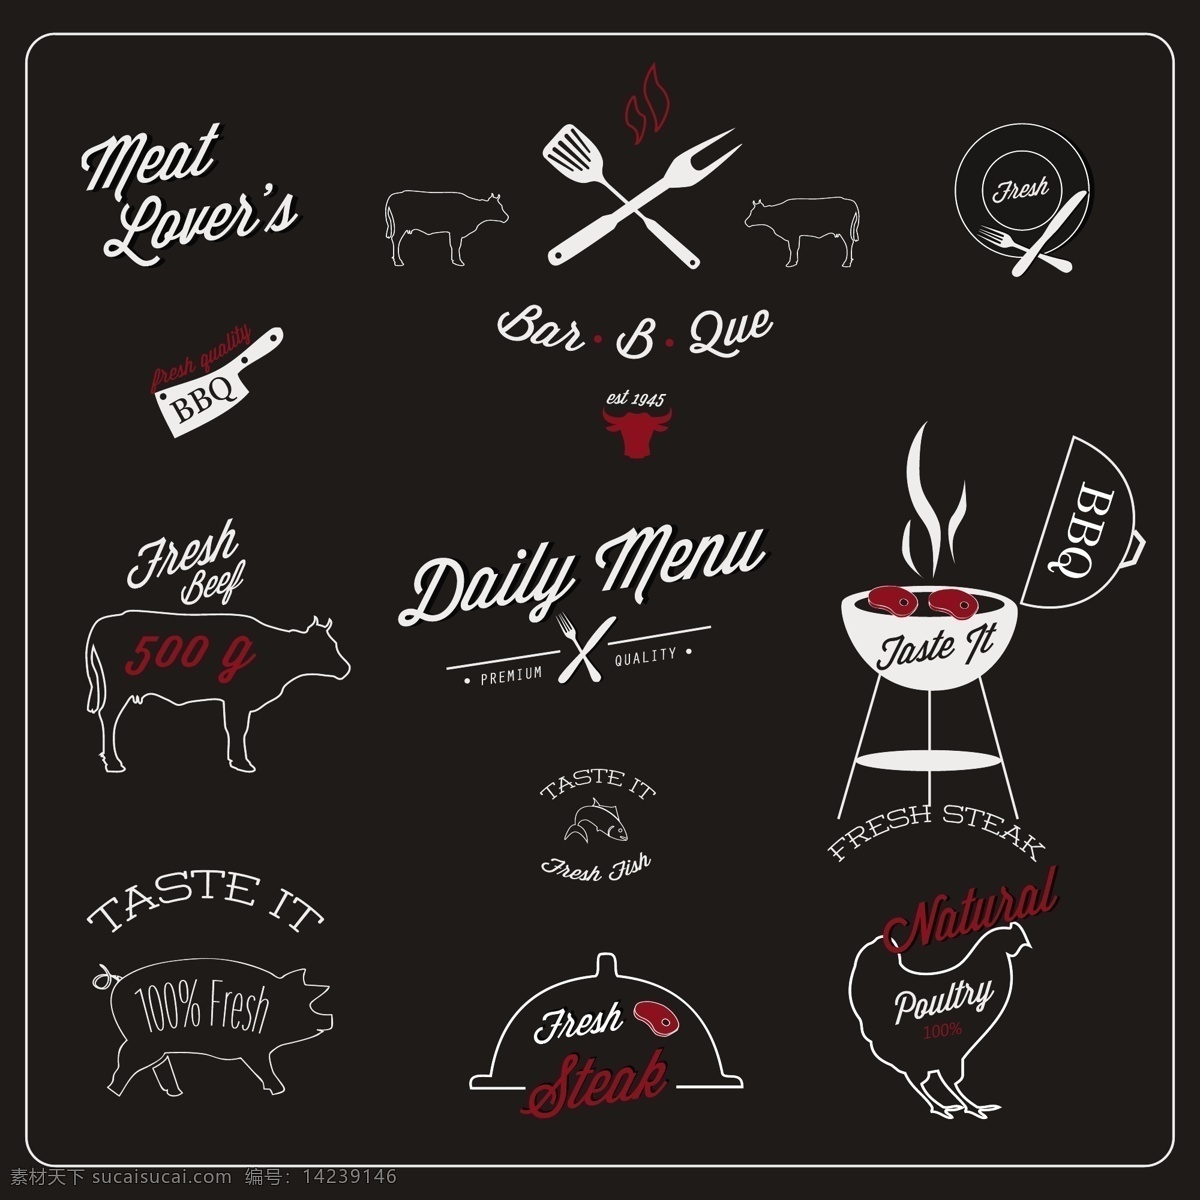 餐厅 标签 食品 菜单 模板 黑色 黑板 装饰 肉 猪 元素 烧烤叉 书法 午餐 刀 牛排 牛肉饭